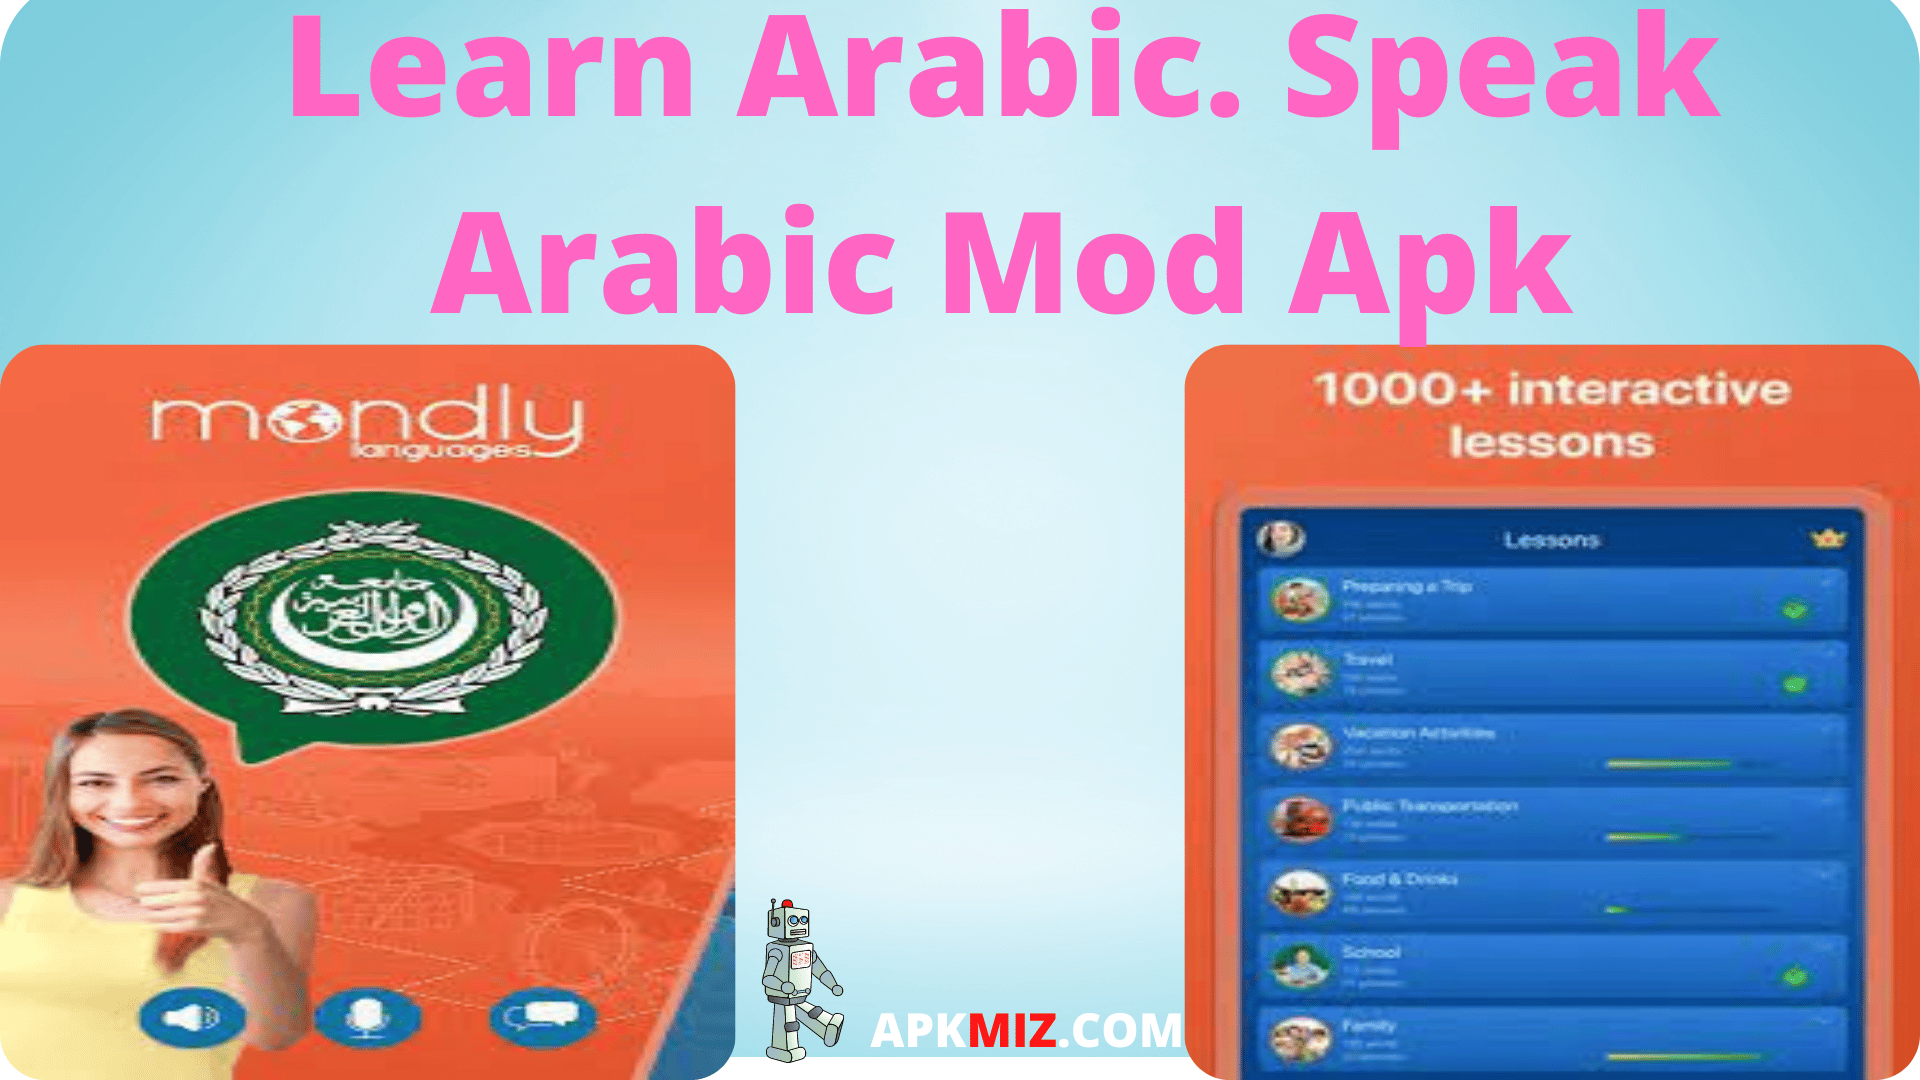 Learn Arabic. Speak Arabic‏ Mod Apk